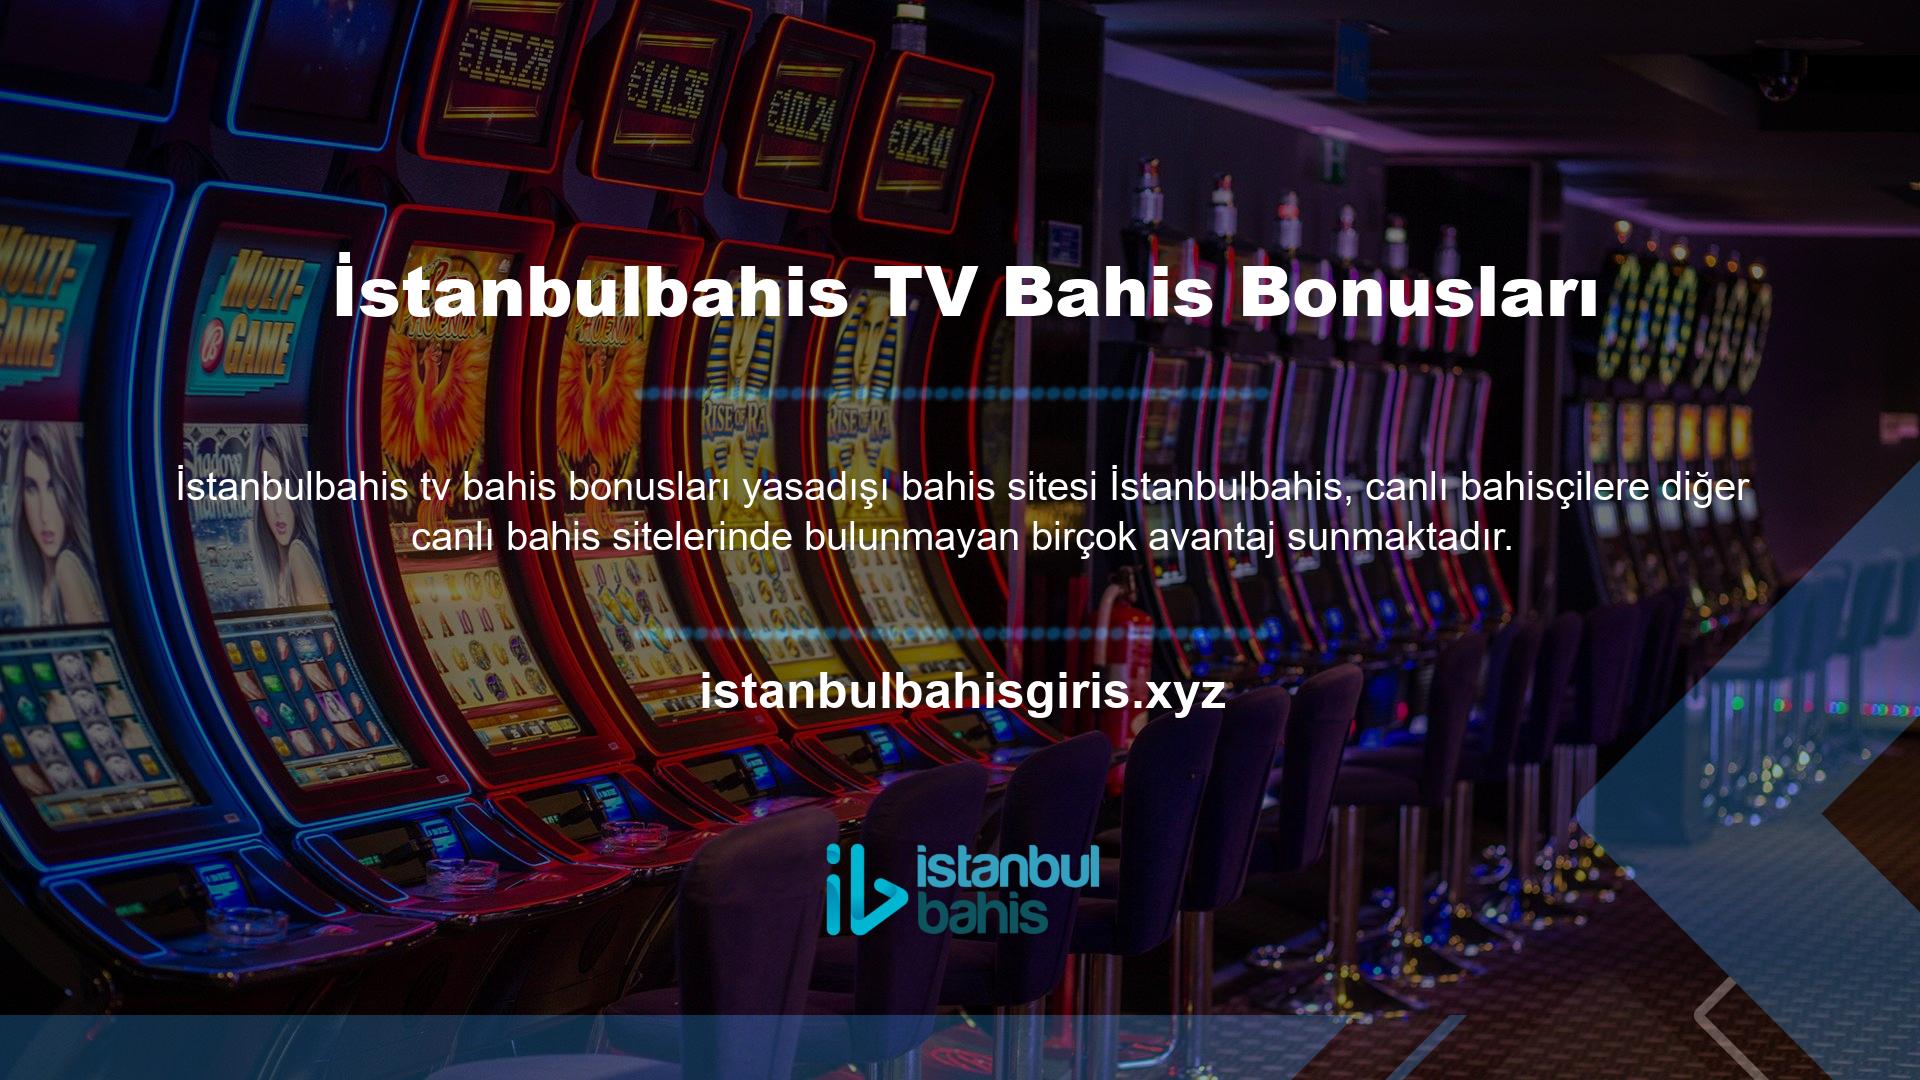 İstanbulbahis TV Bahis Bonus TV'si, oyuncuların maçları canlı izlemeleri ve kuponları görmeleri için başvurulacak platformdur